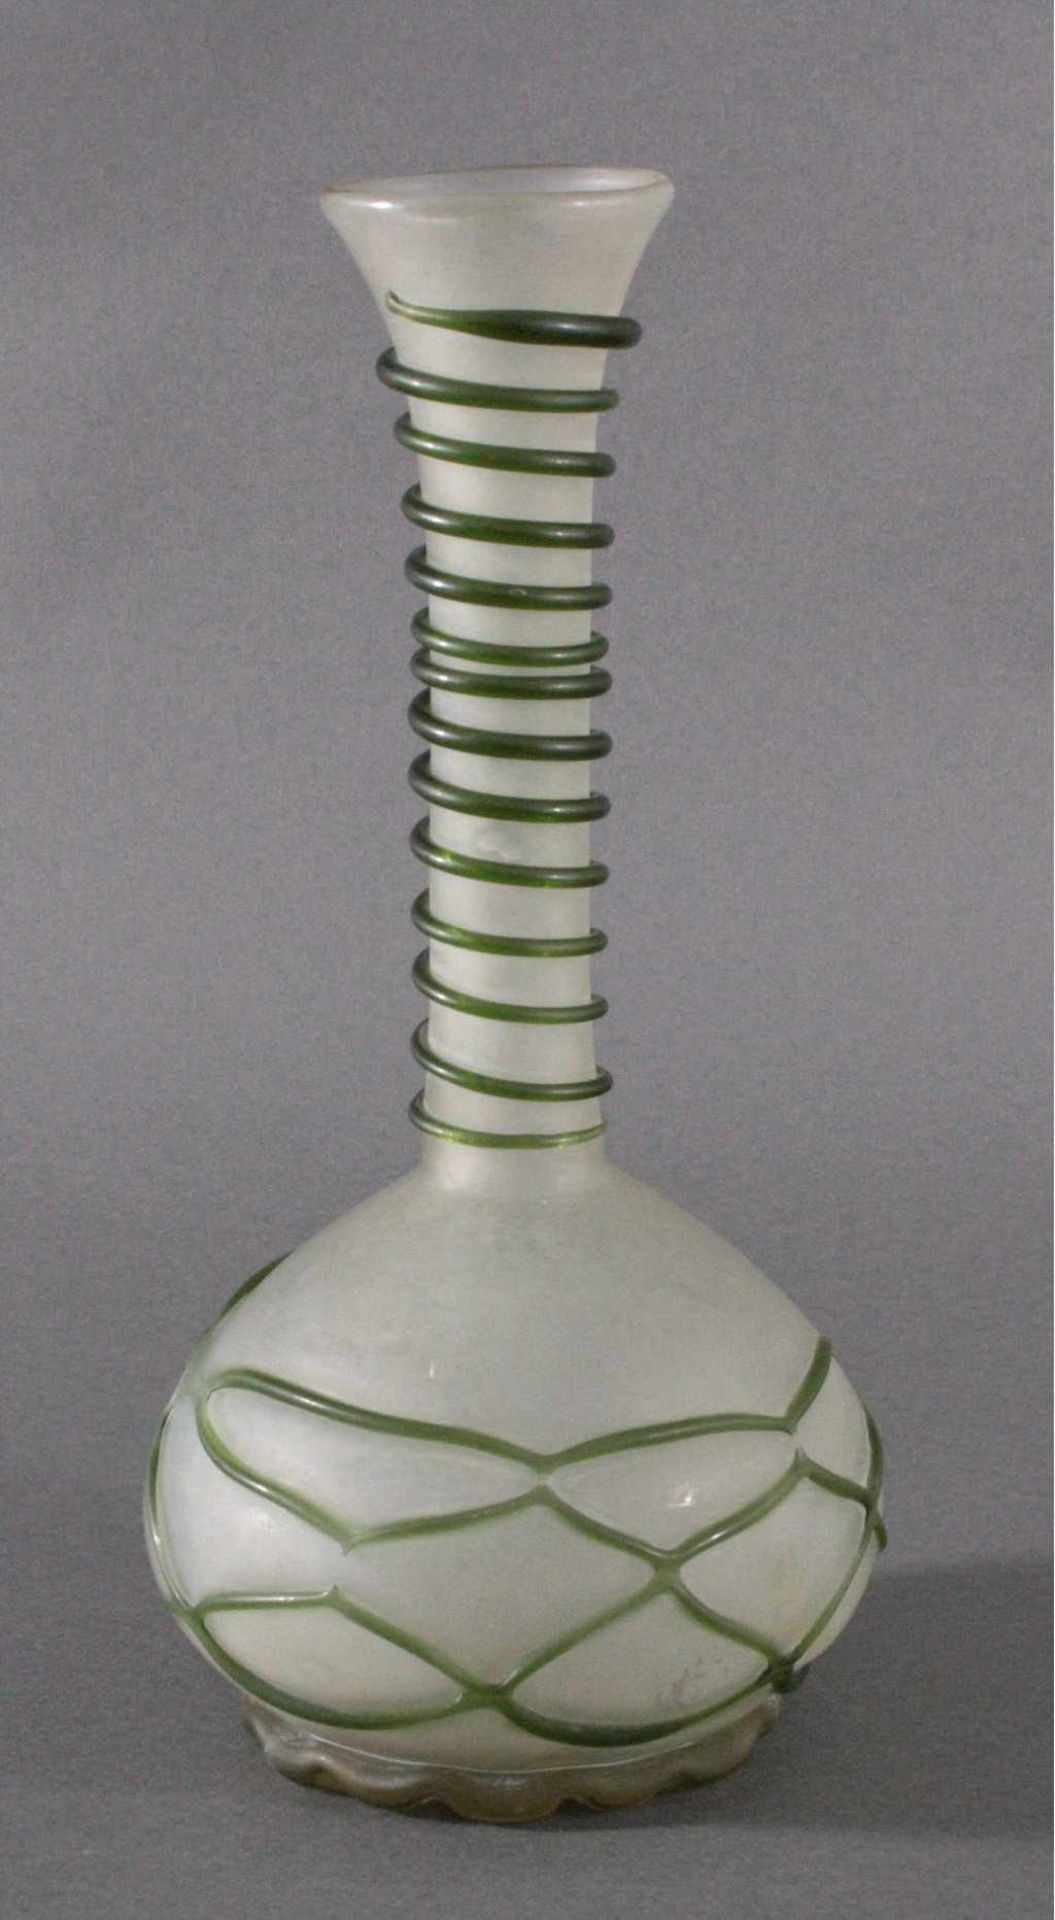 Große Vase Böhmen mit Glasspiralefarbloses Glas, bauchiger Korpus mit langem schlanken Hals,spiralig